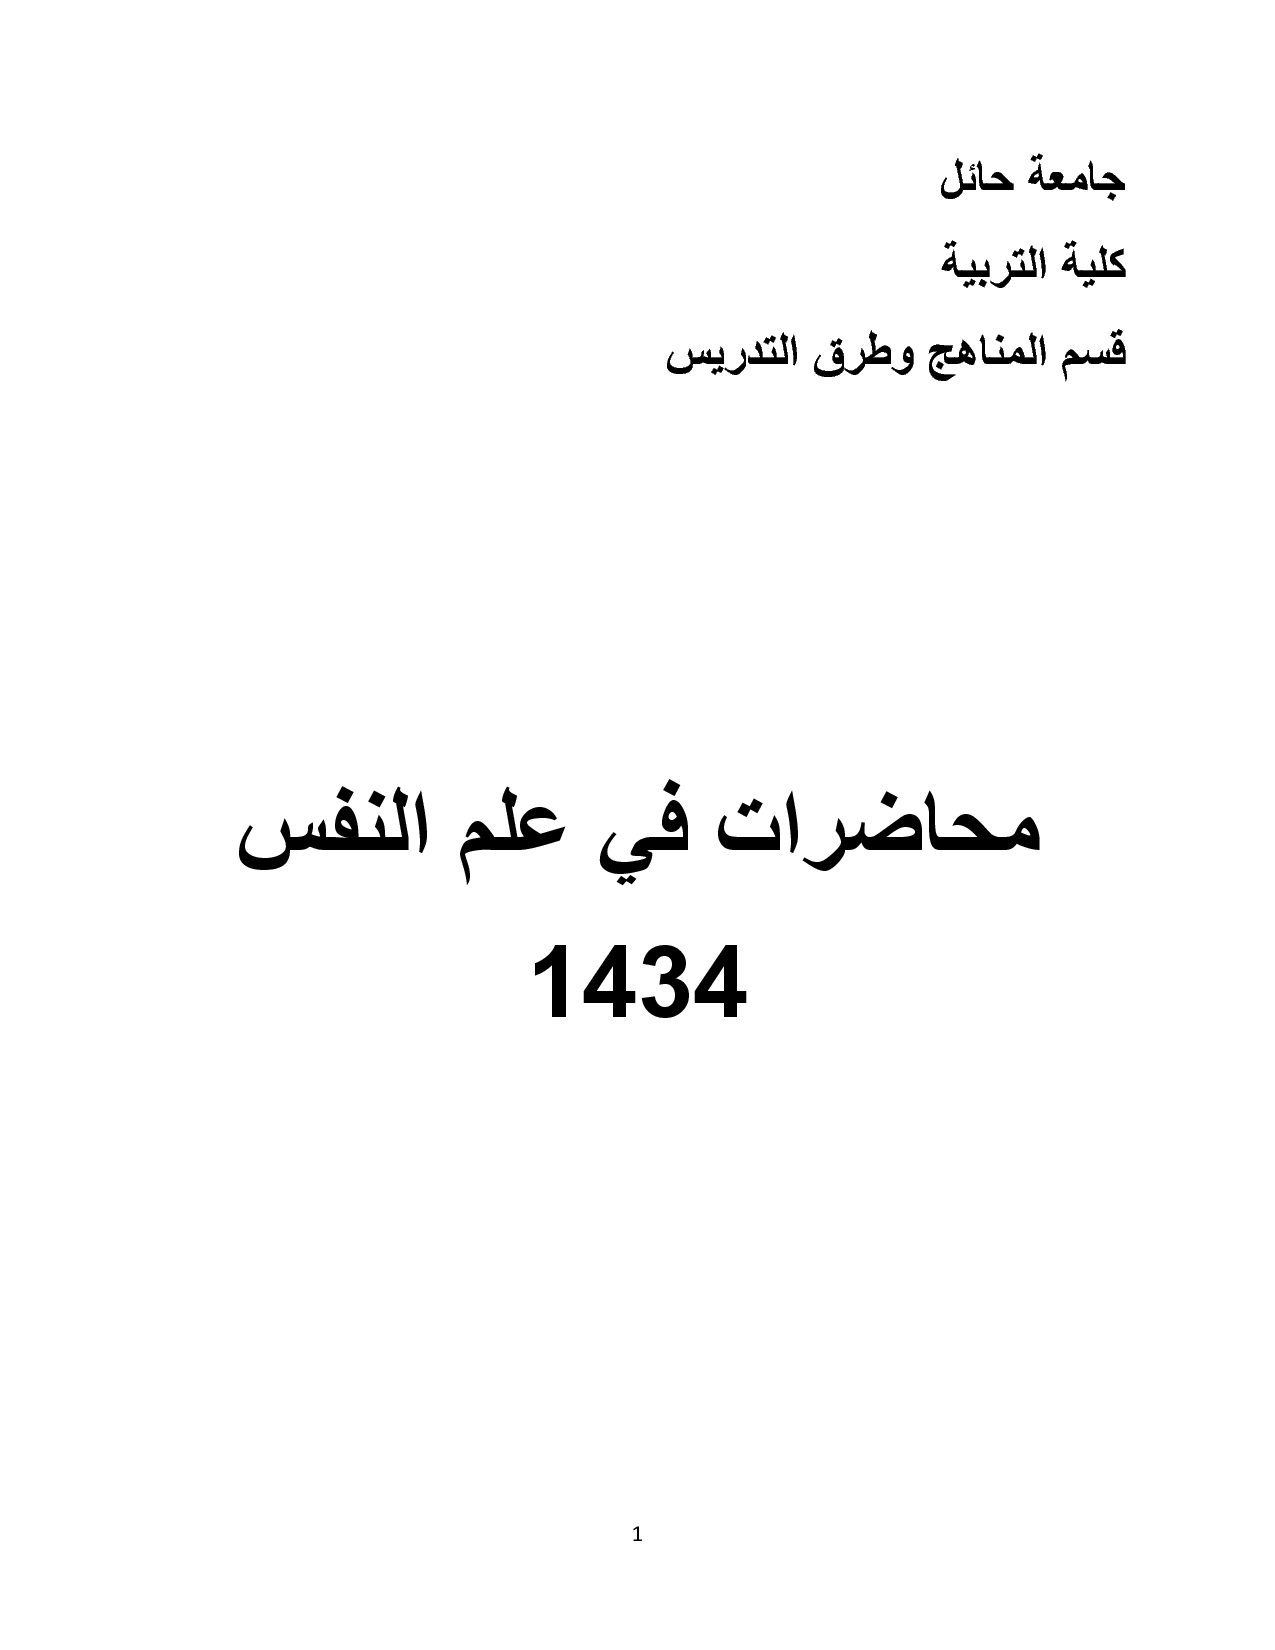 20160818 656 1 محاضرات في علم النفس العنود واضح